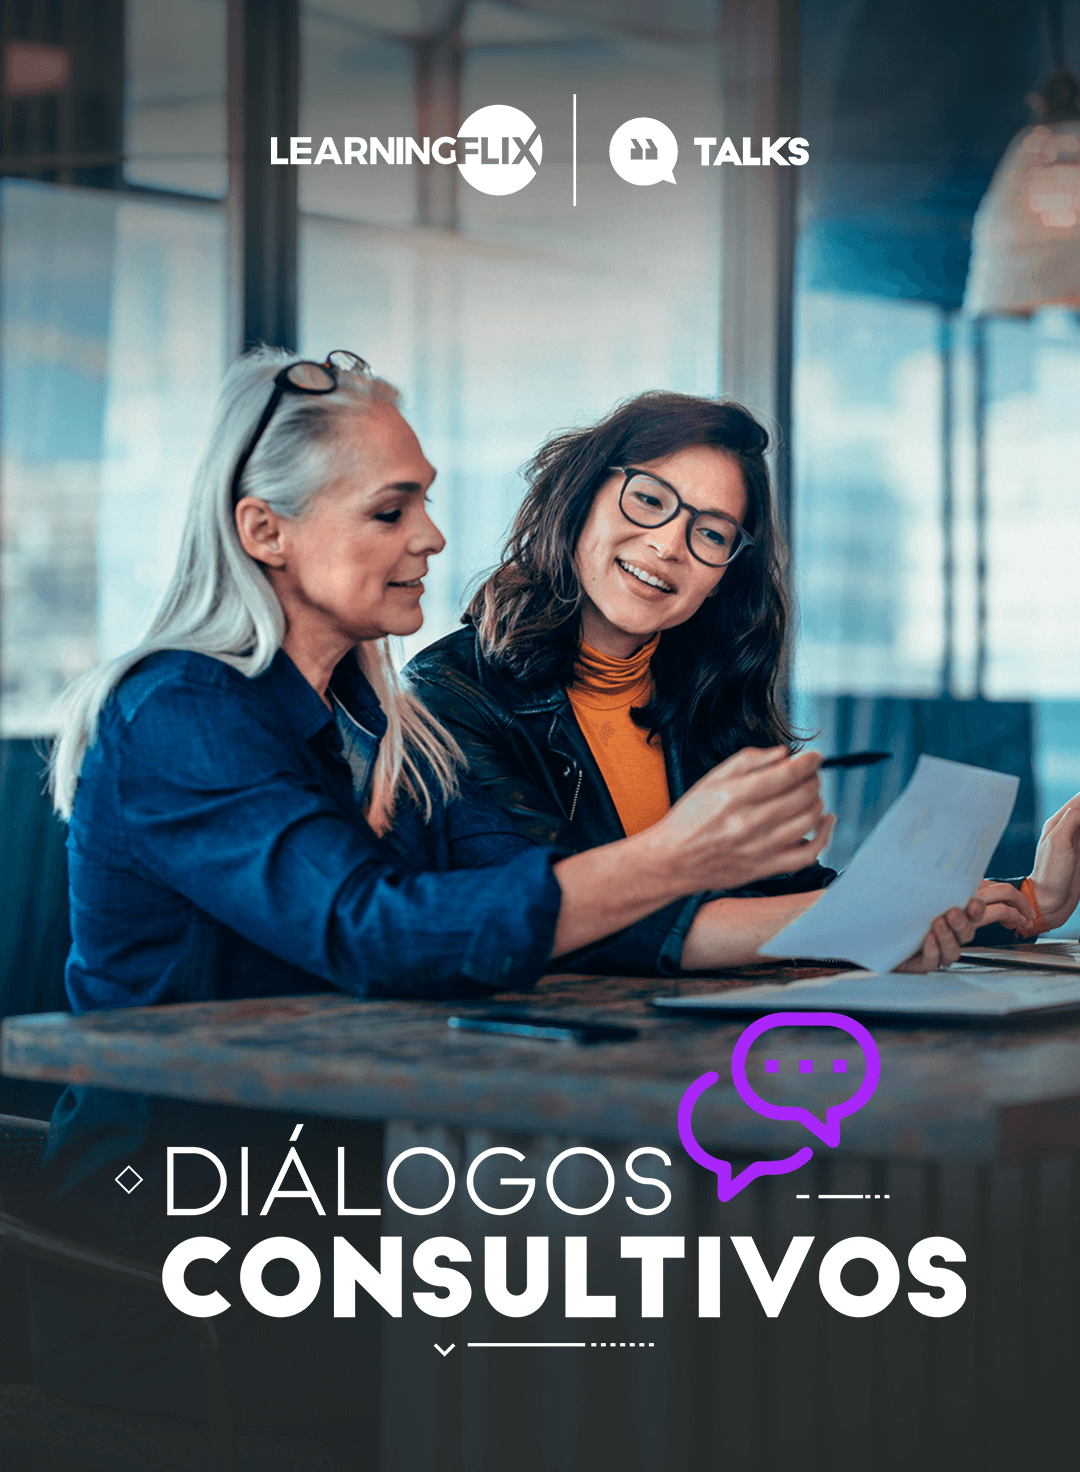 06. talks dialogos consultivos